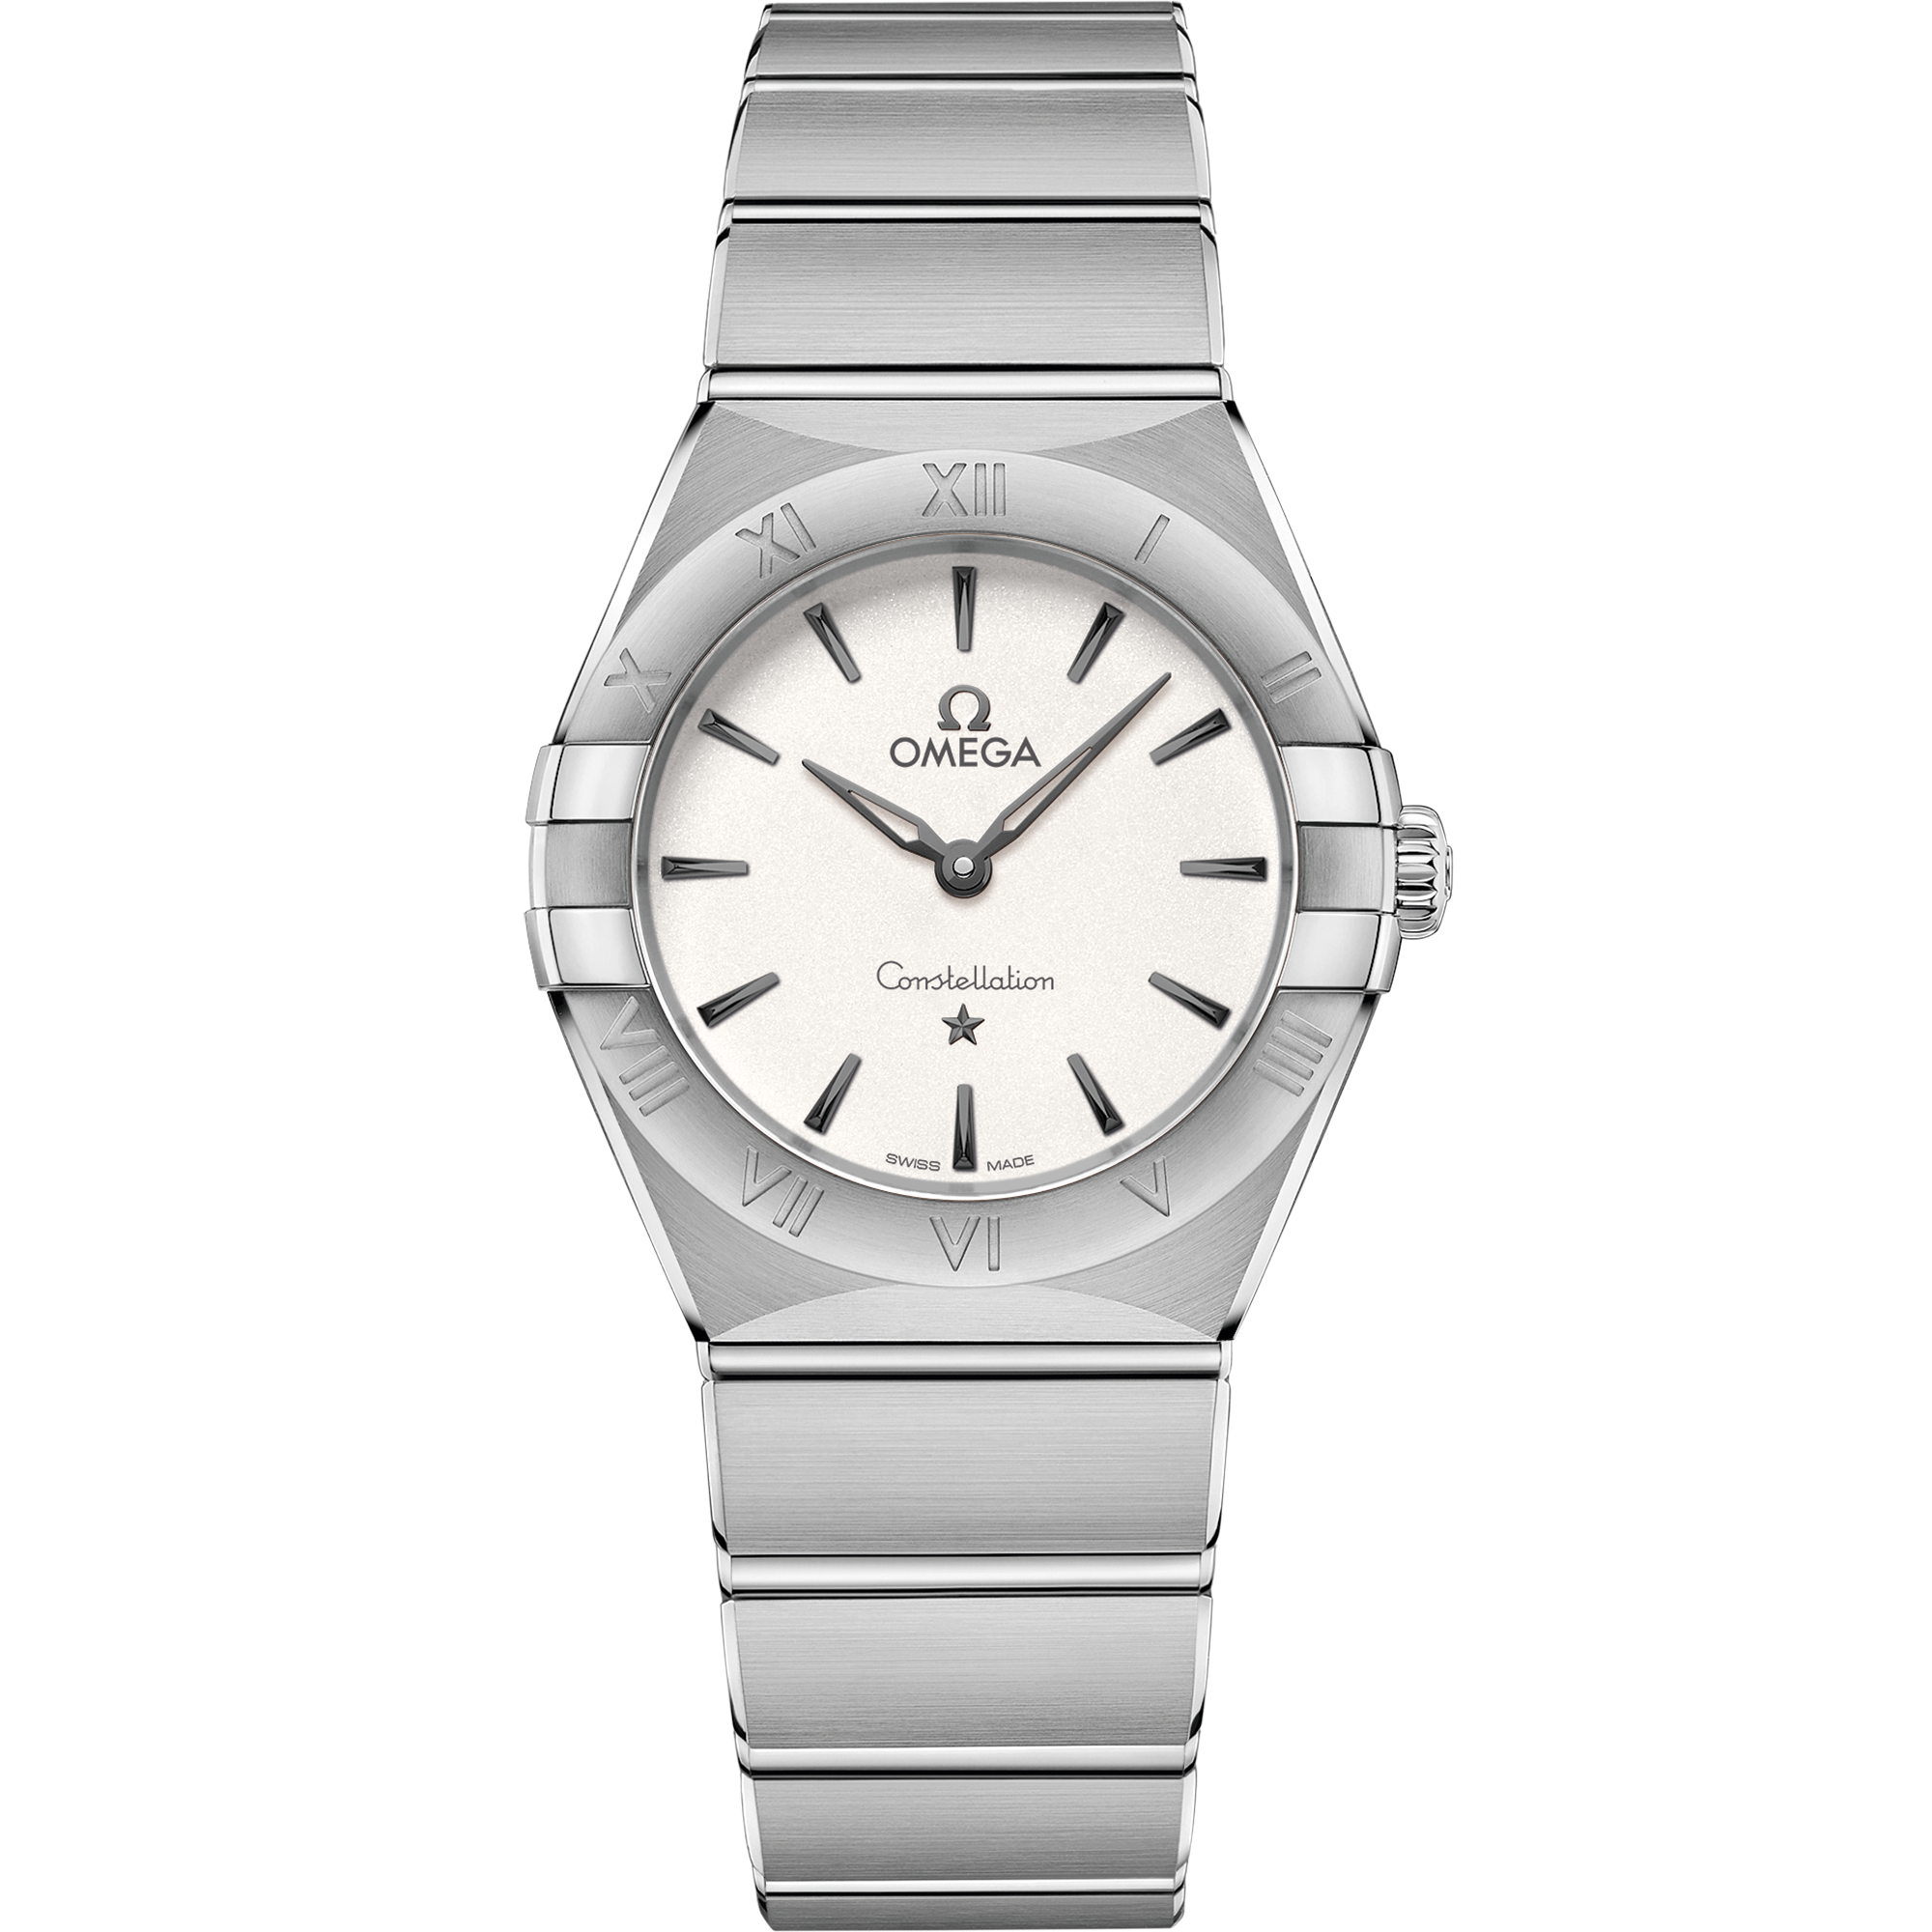 Uhr mit Silber Zifferblatt auf Stahl Gehäuse mit Edelstahlarmband bracelet - Constellation 28 mm, Stahl mit Stahlband - 131.10.28.60.02.001